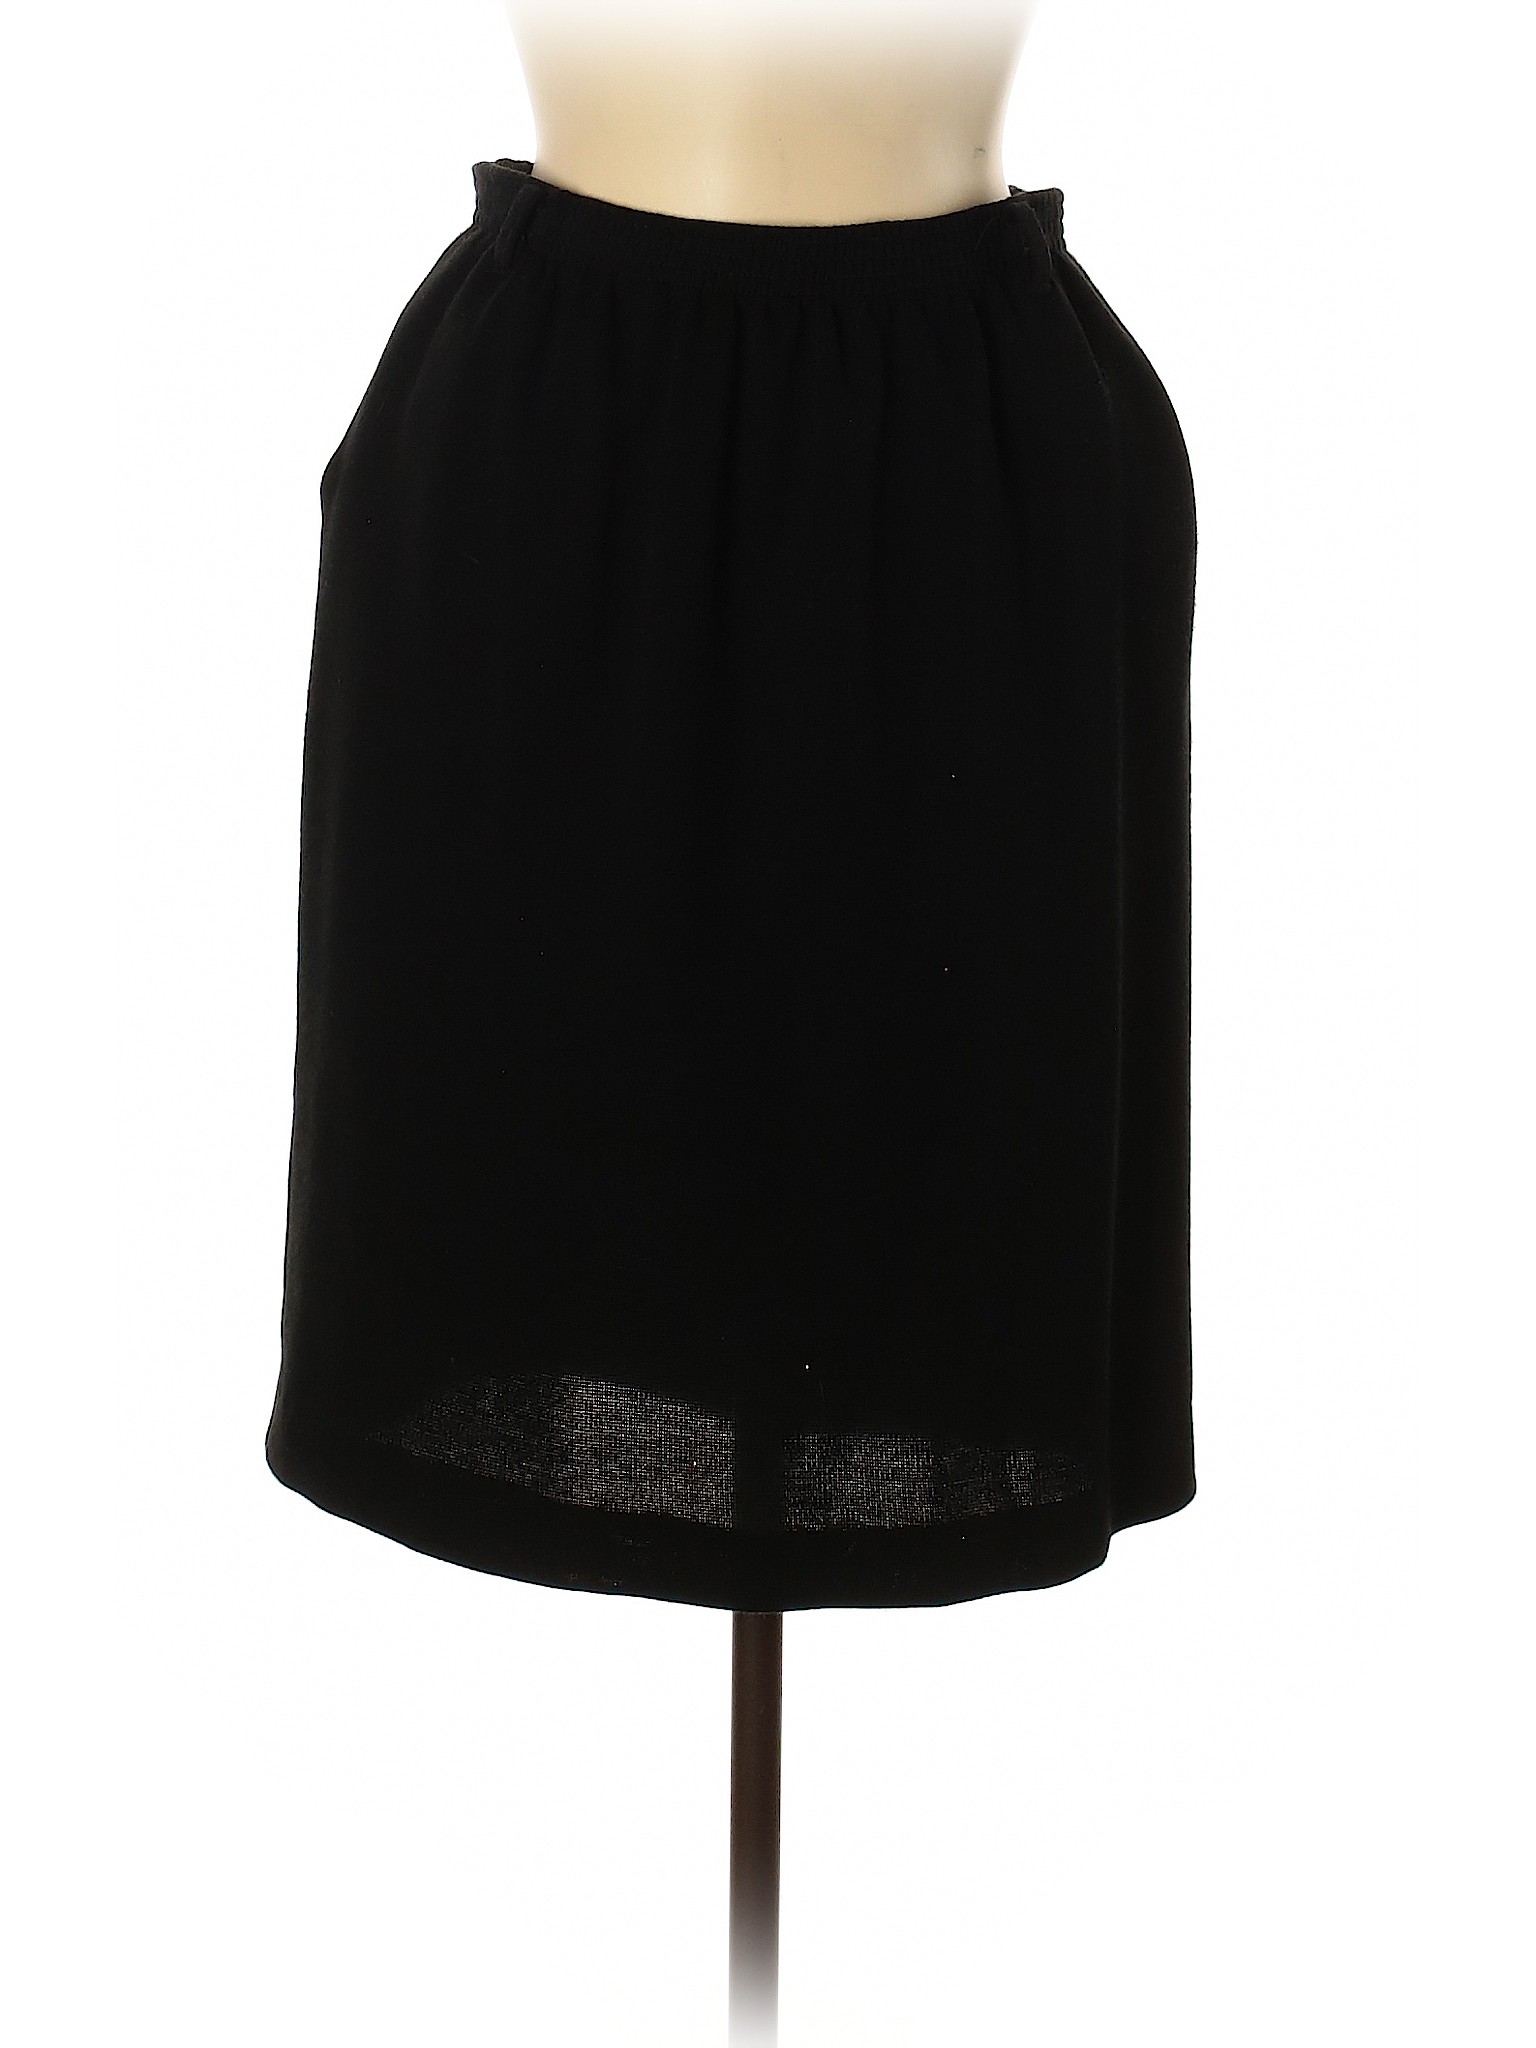 Alfred Dunner Women Black Casual Skirt 6 Petites | eBay